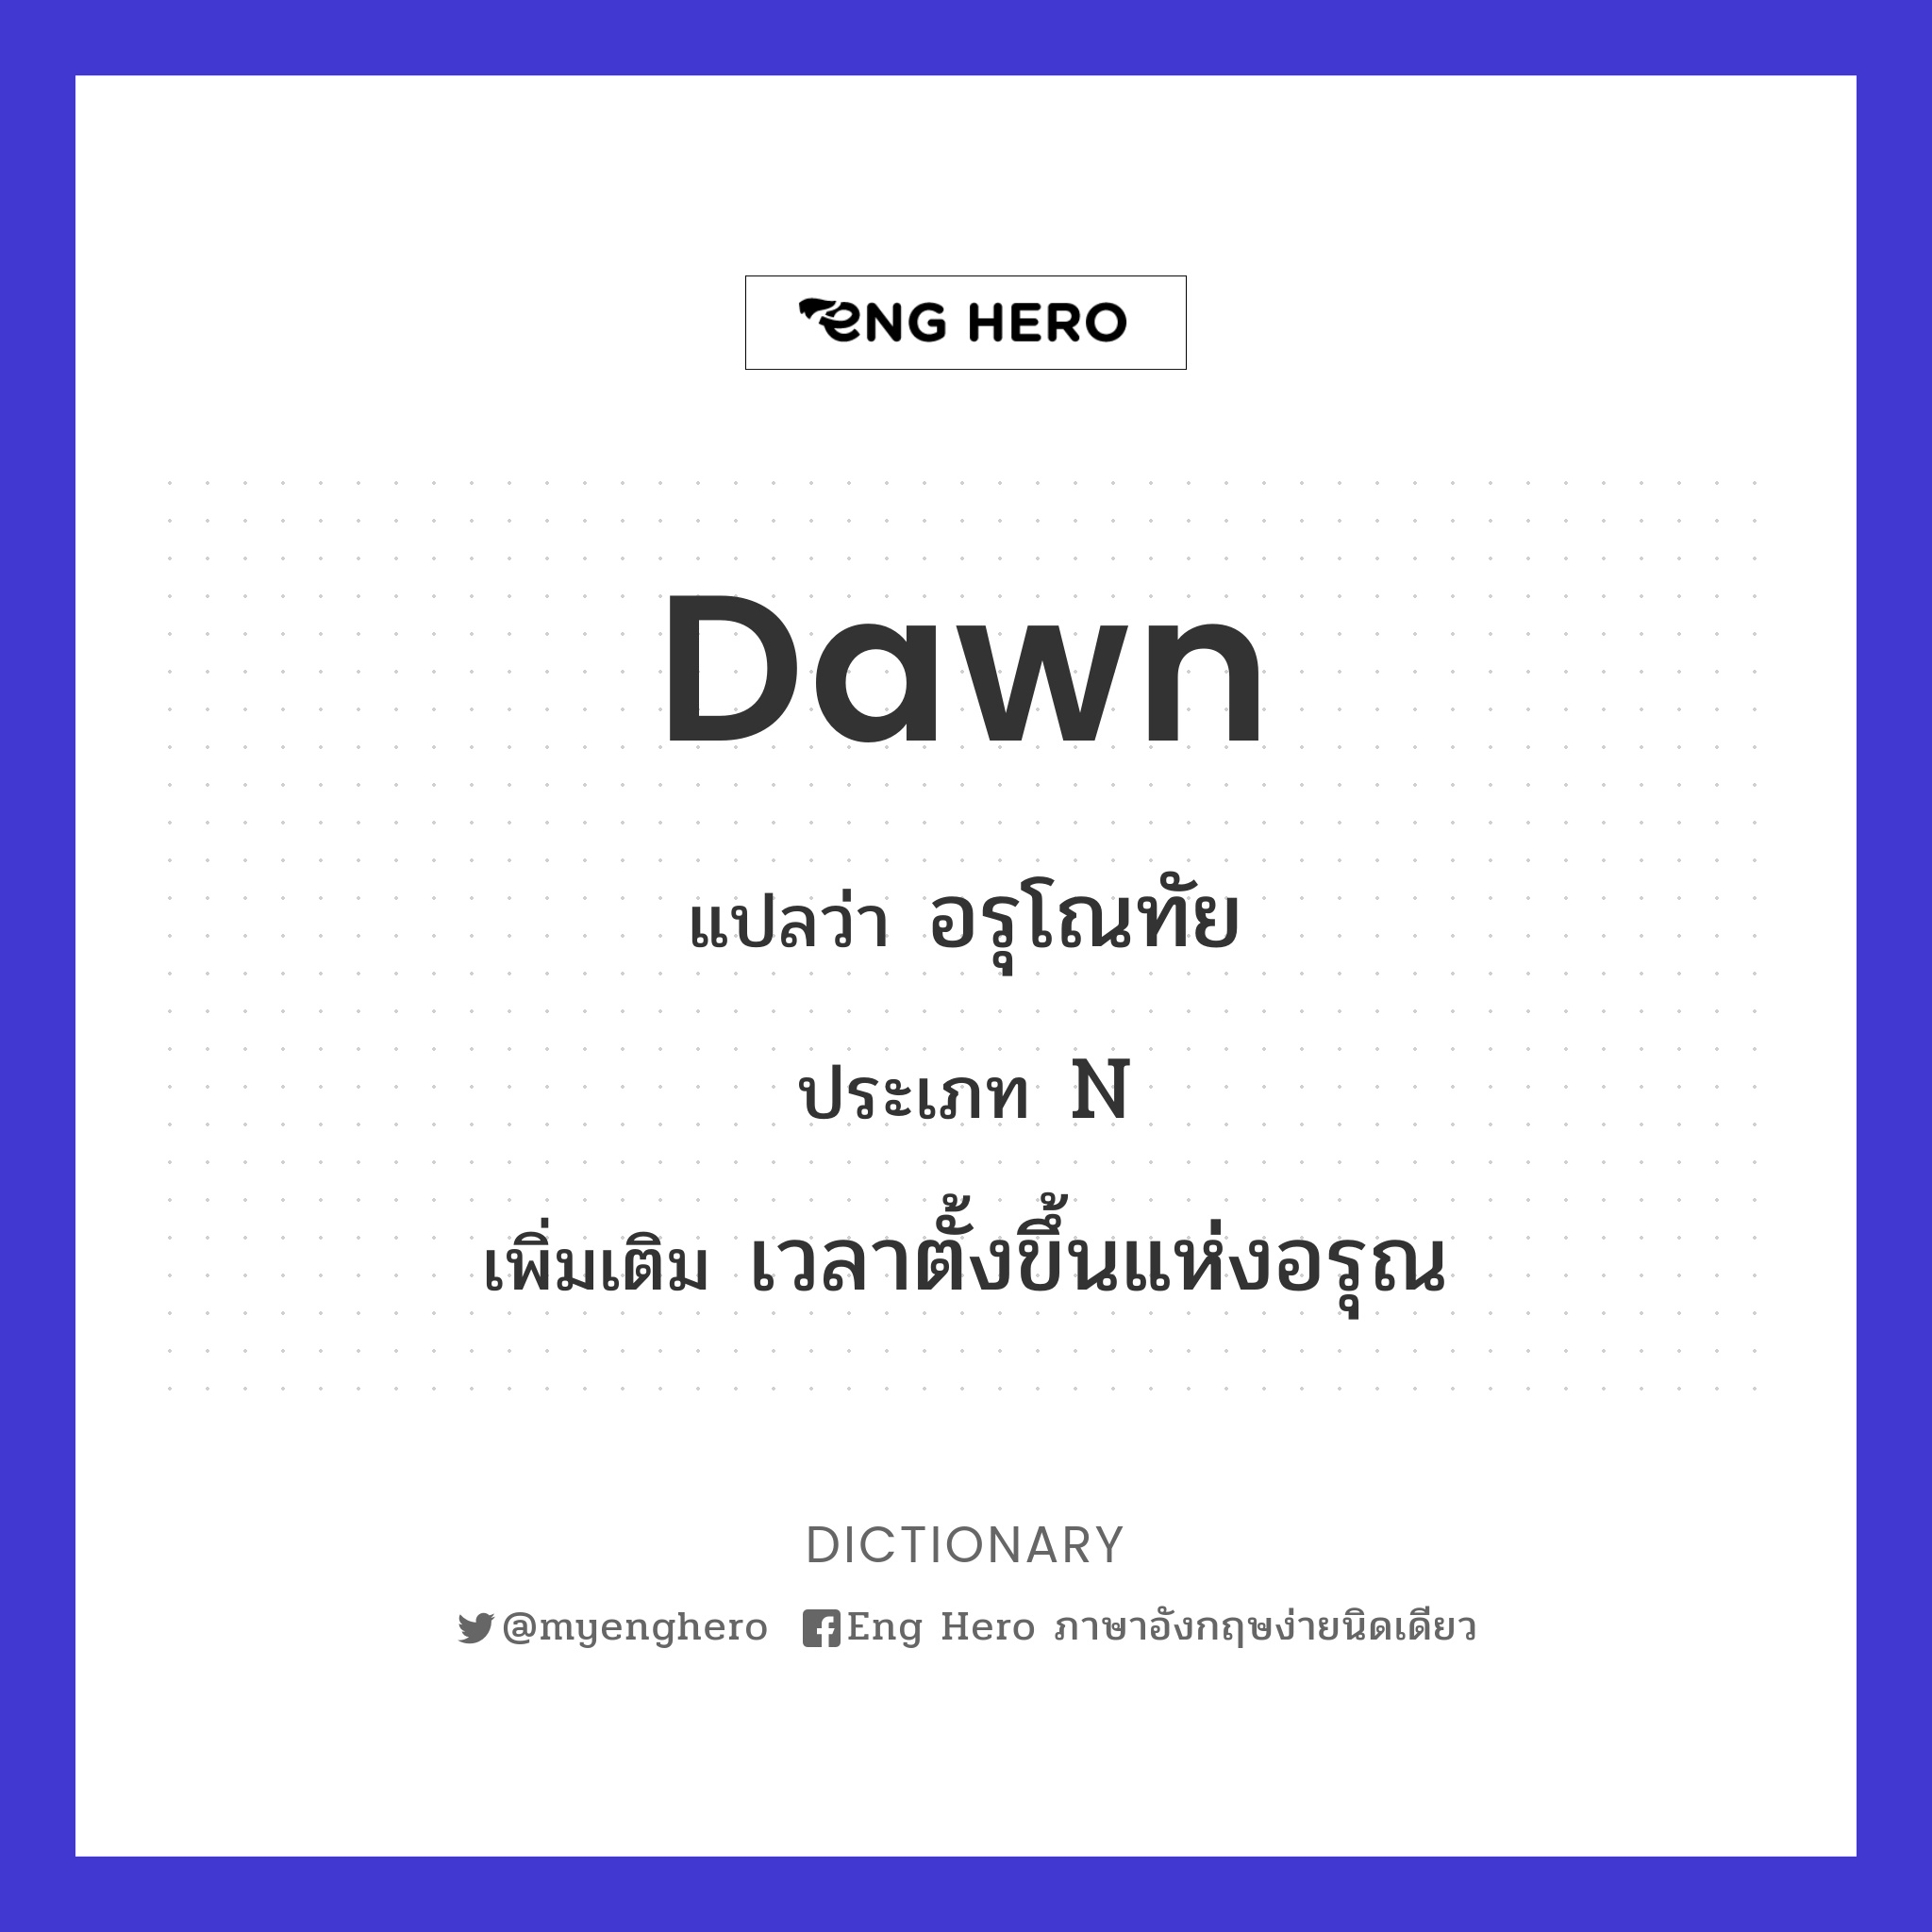 dawn